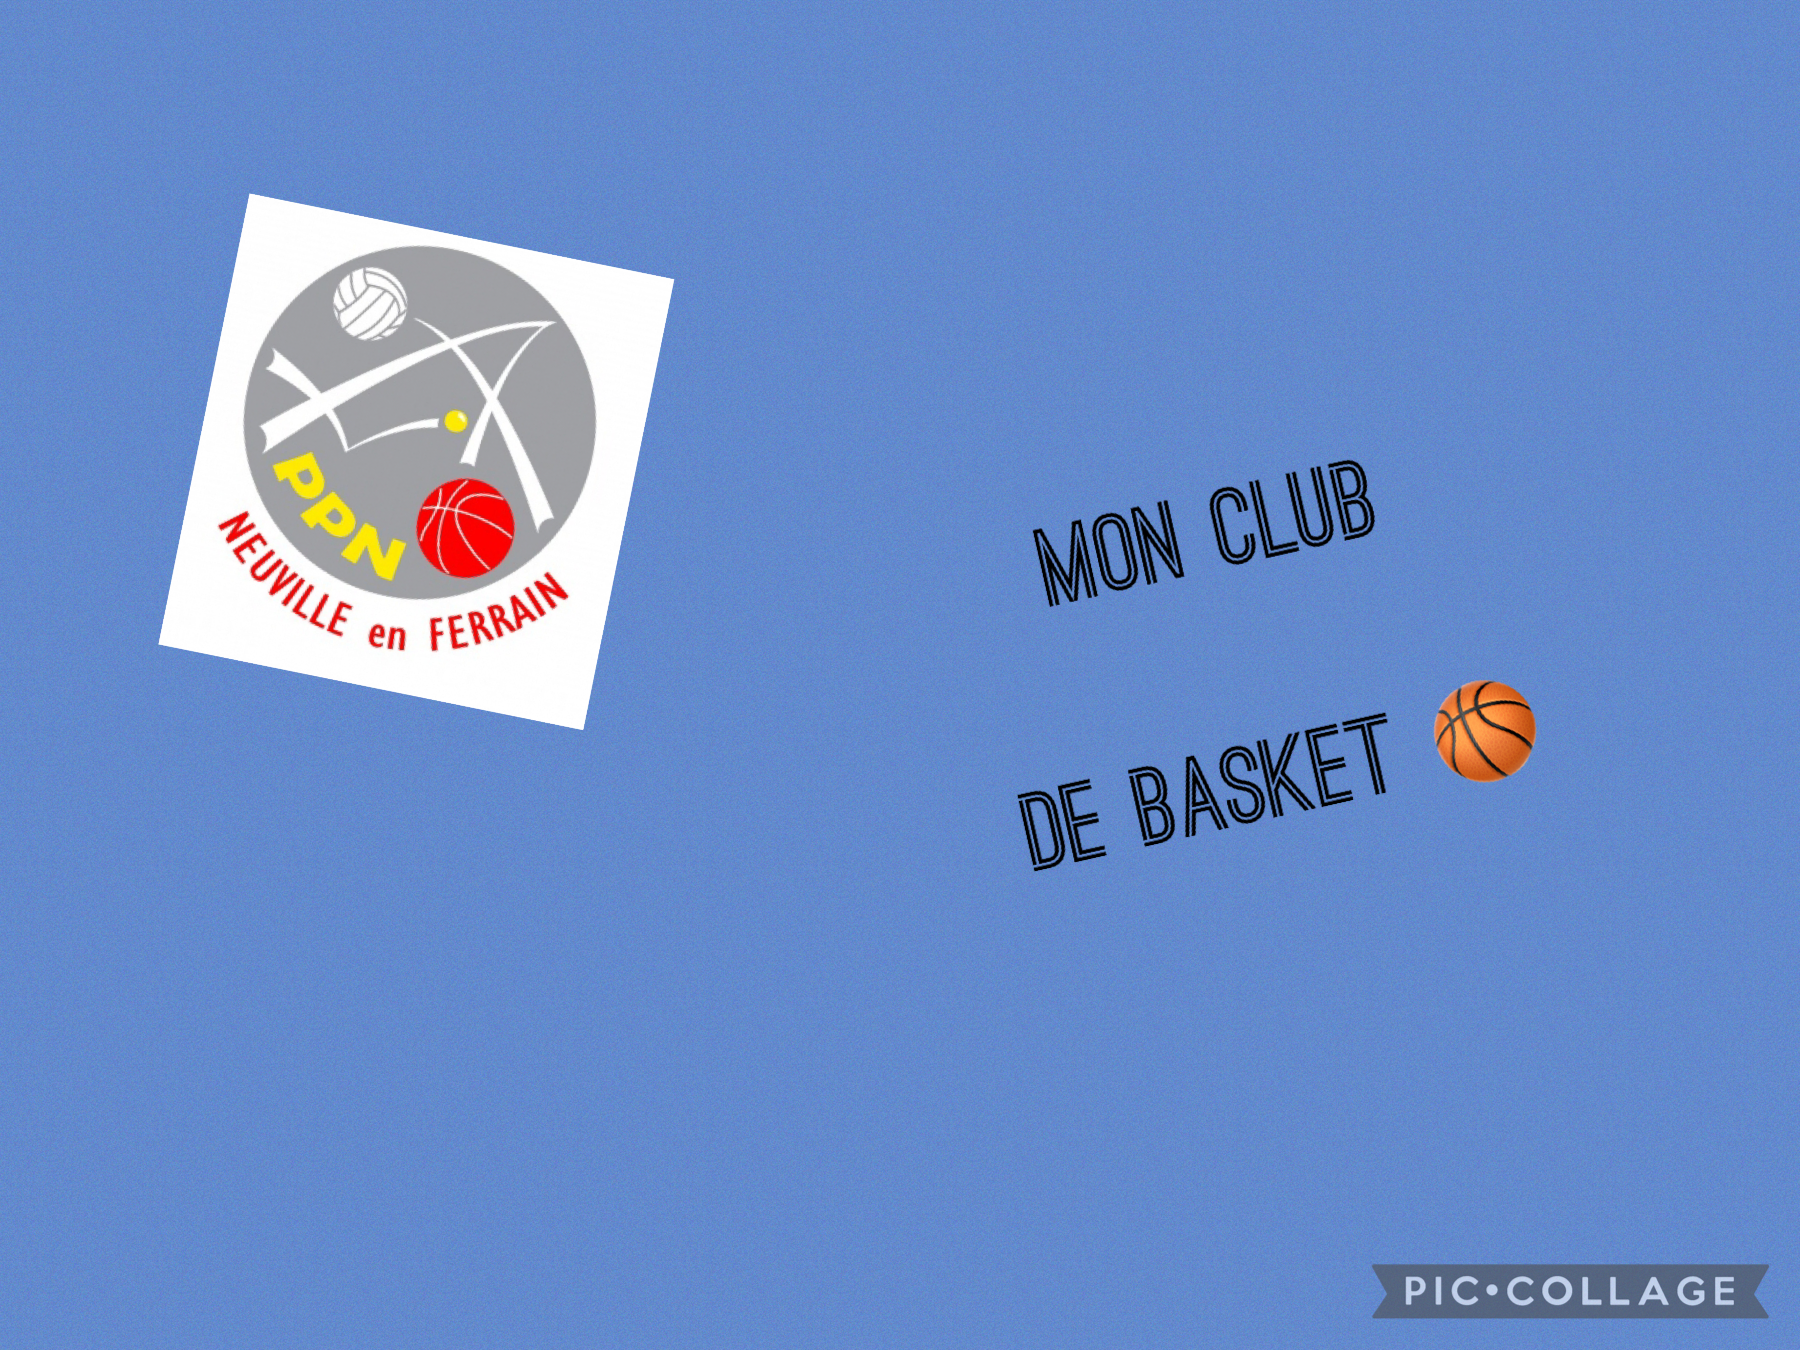 Mon club basket 🏀 👟 